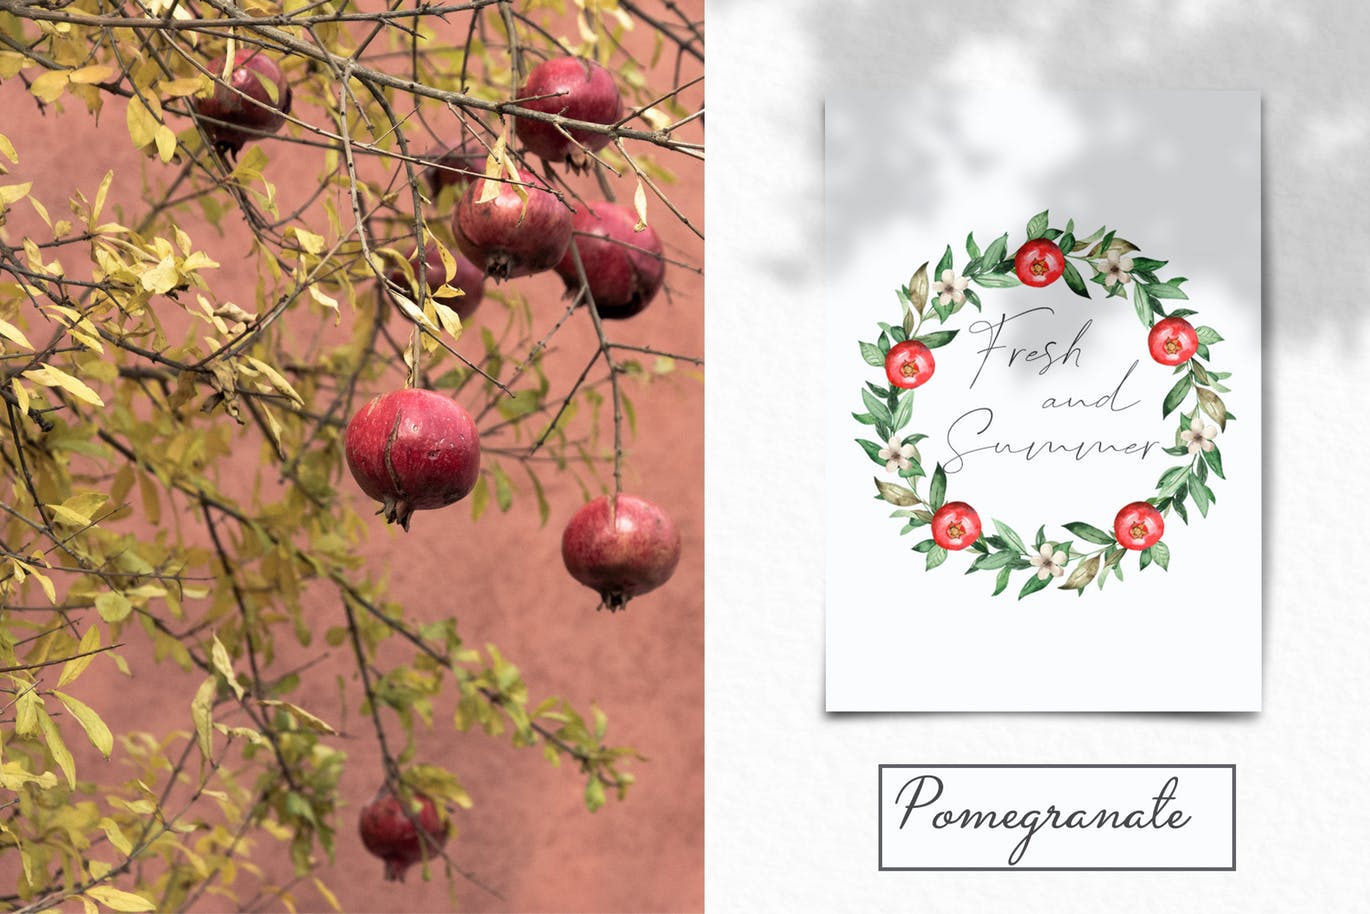 水彩石榴剪贴画/花框/花环蚂蚁素材精选设计素材 Watercolor pomegranate. Clipart, frames, wreaths插图(10)